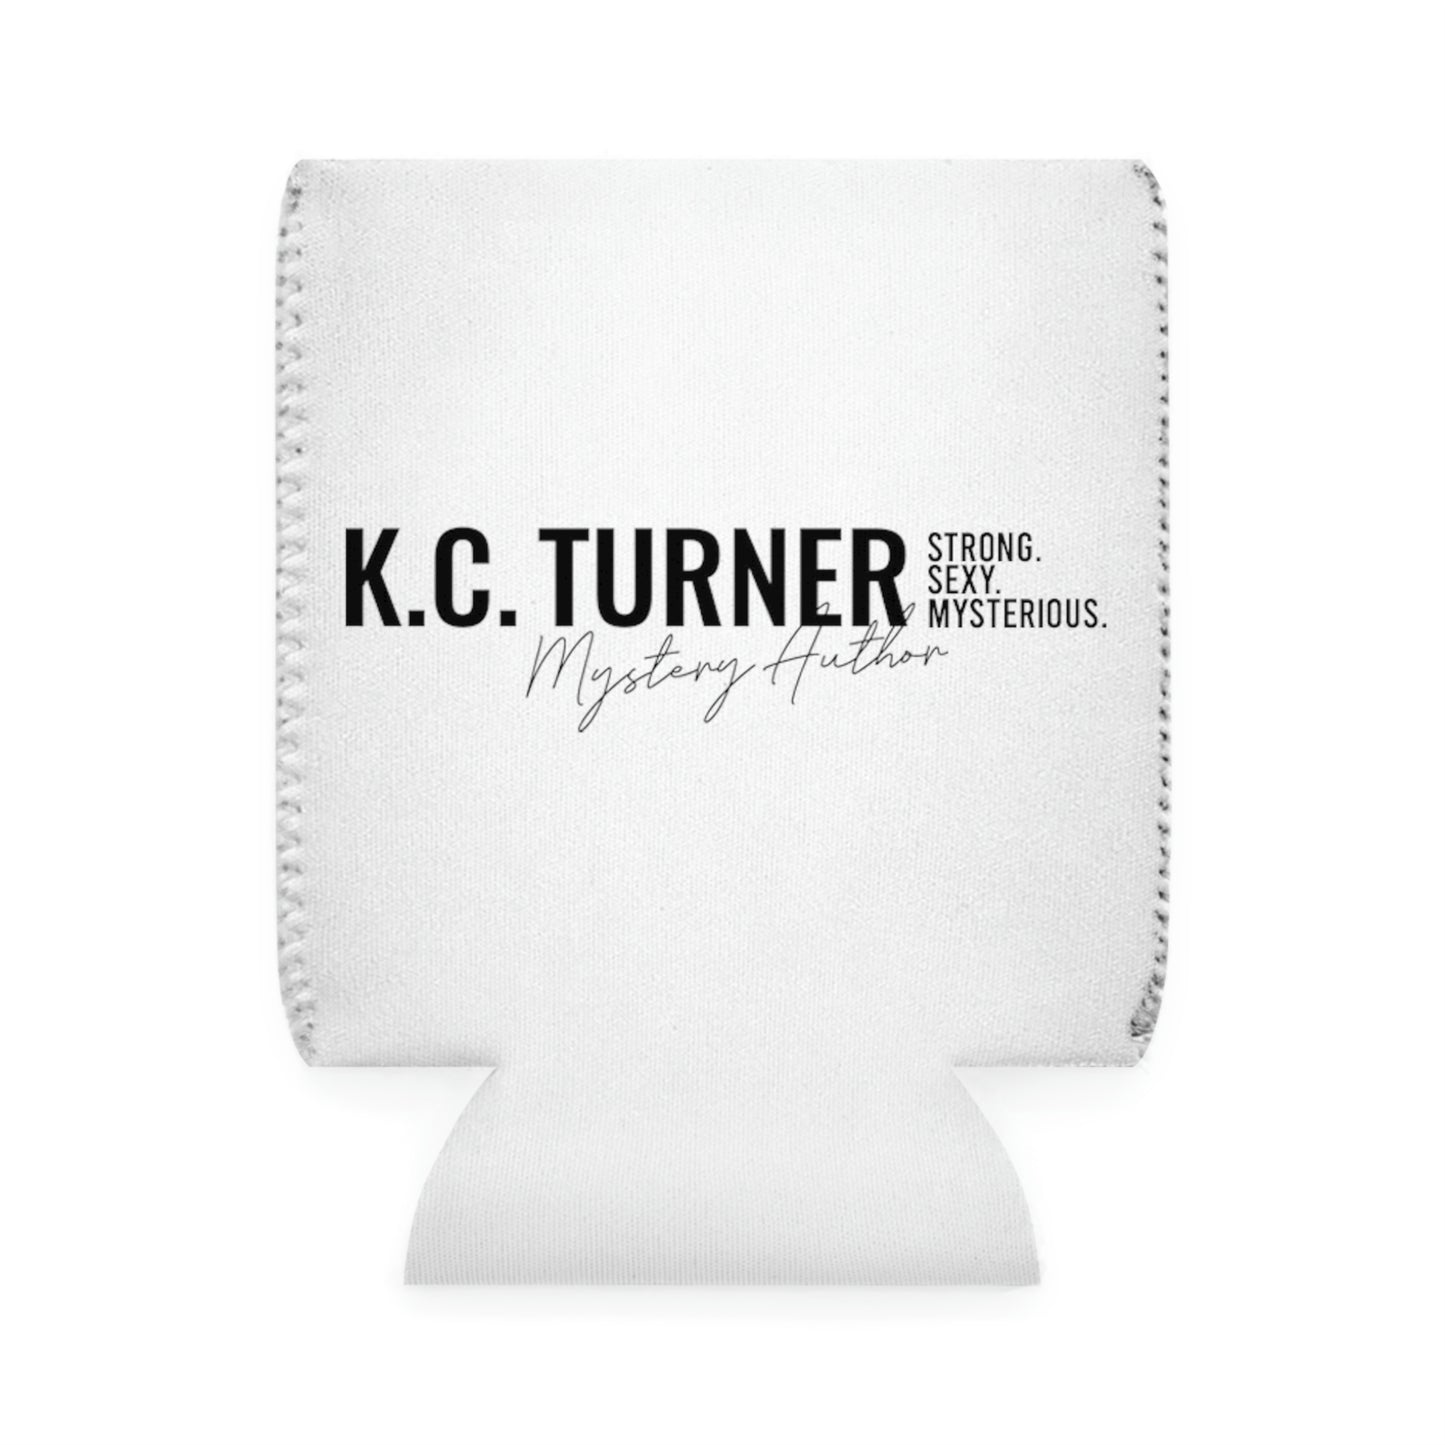 K.C. TURNER Can Cooler Sleeve